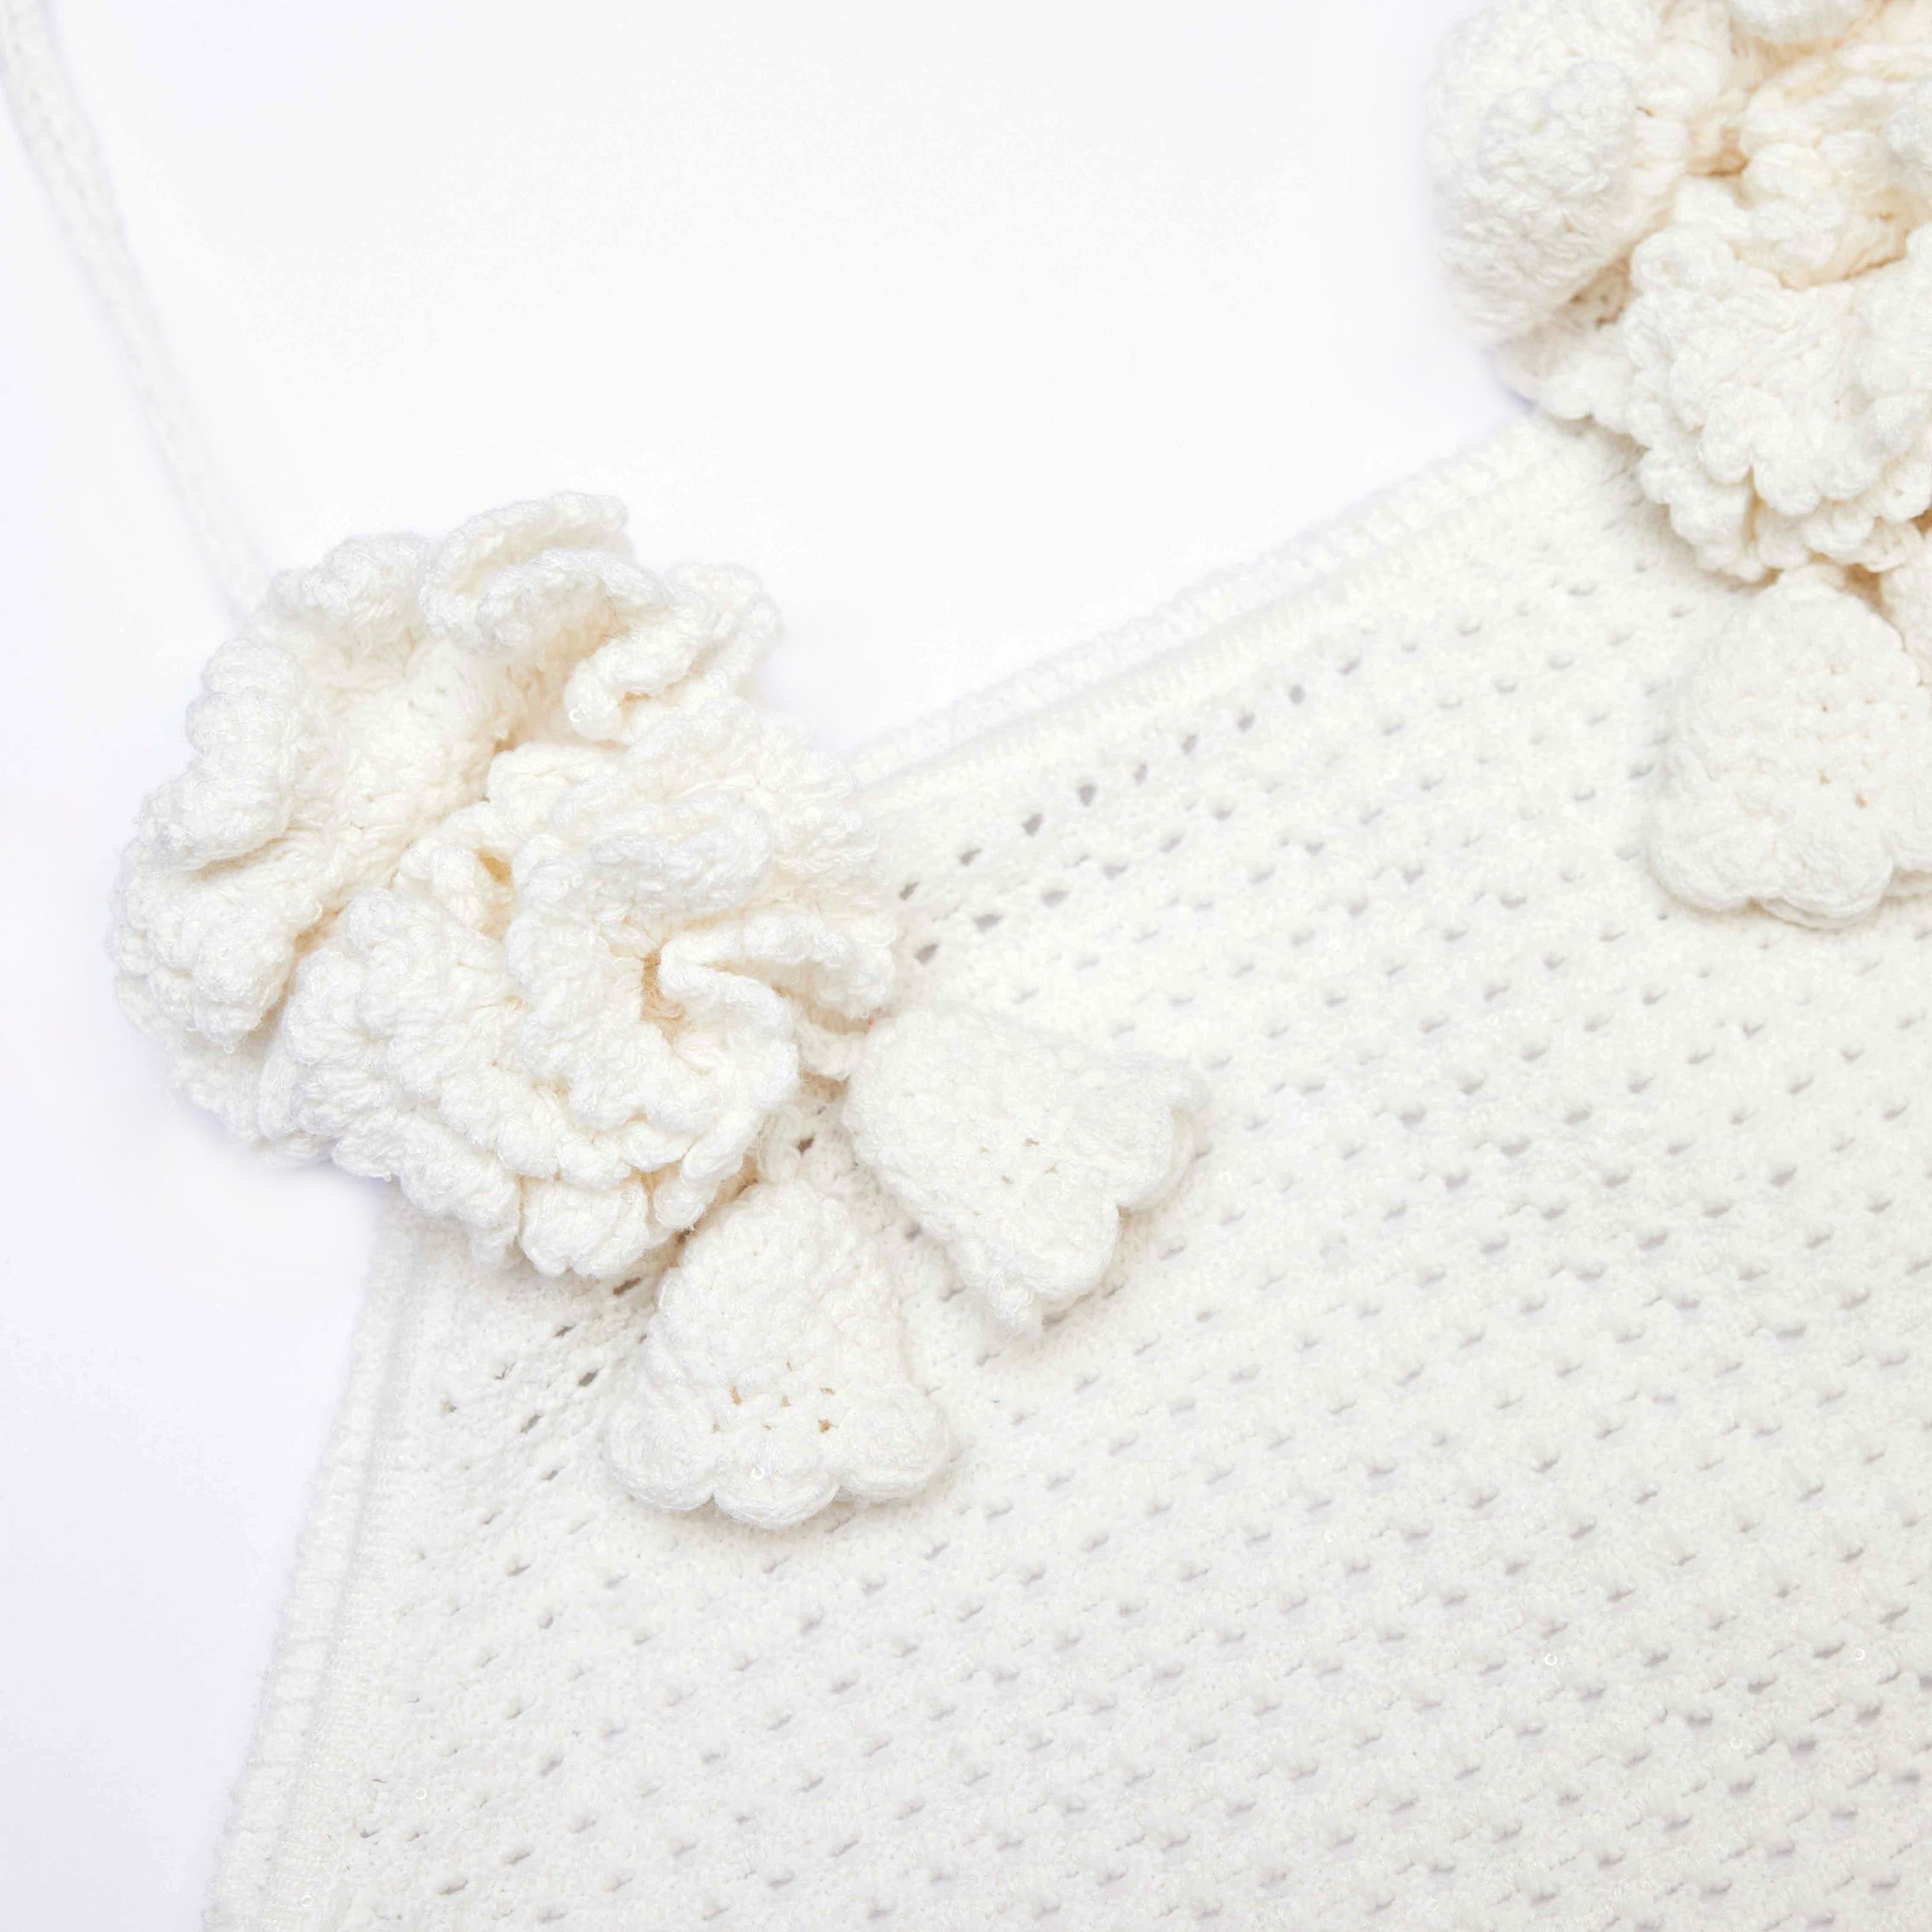 White Crochet Mini Dress